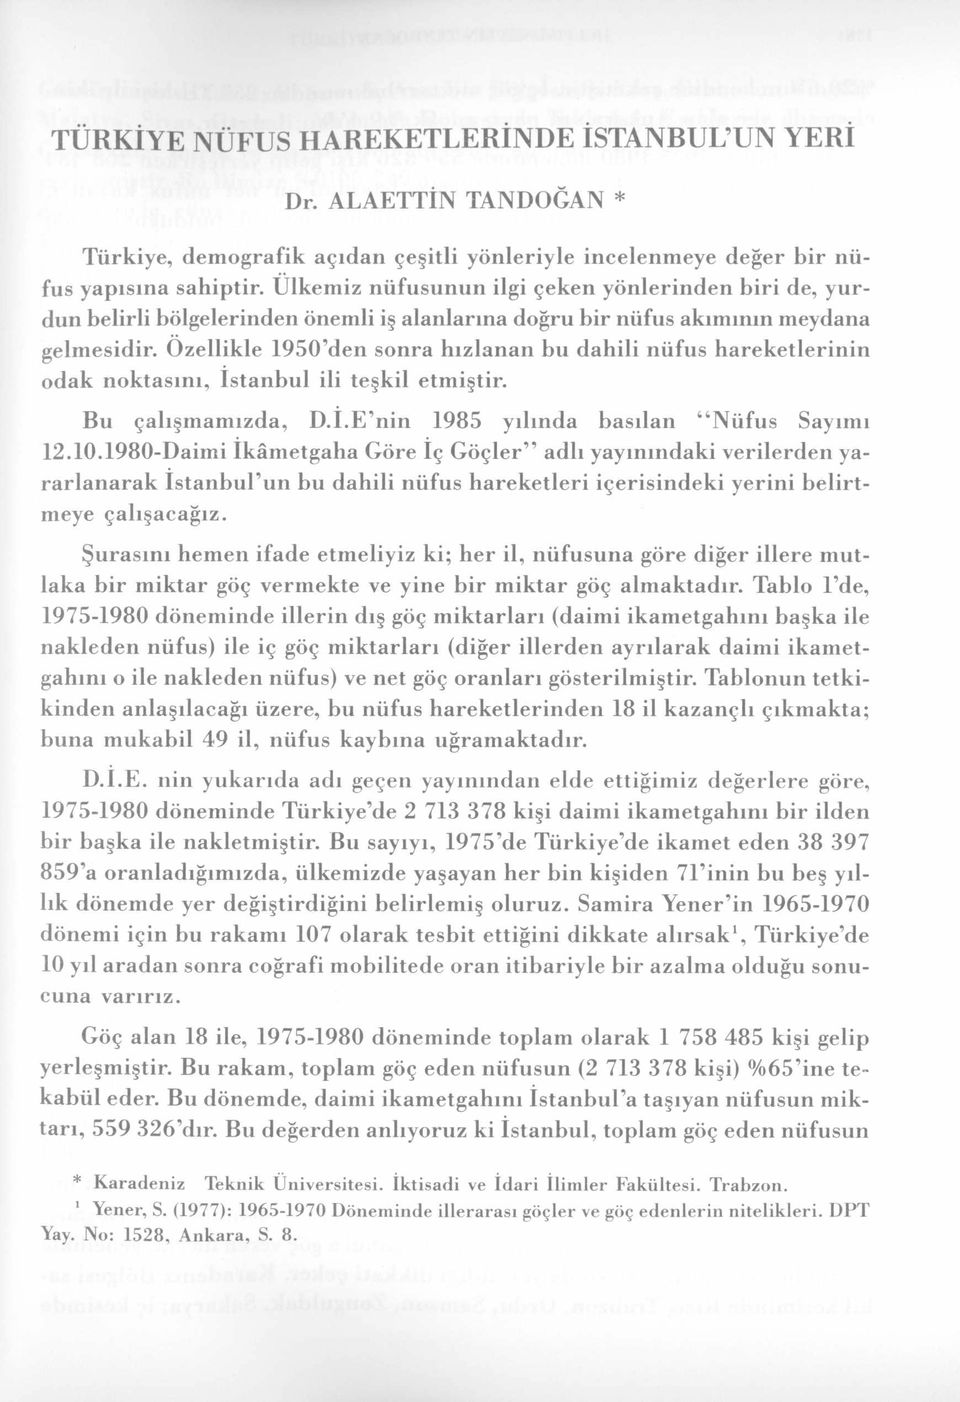 Özellikle 1950'den snra hızlanan bu dahili nüfus hareketlerinin dak nktasını, İstanbul ili teşkil etmiştir. Bu çalışmamızda, D.I.E nin 1985 yılında basılan Nüfus Sayımı 12.10.